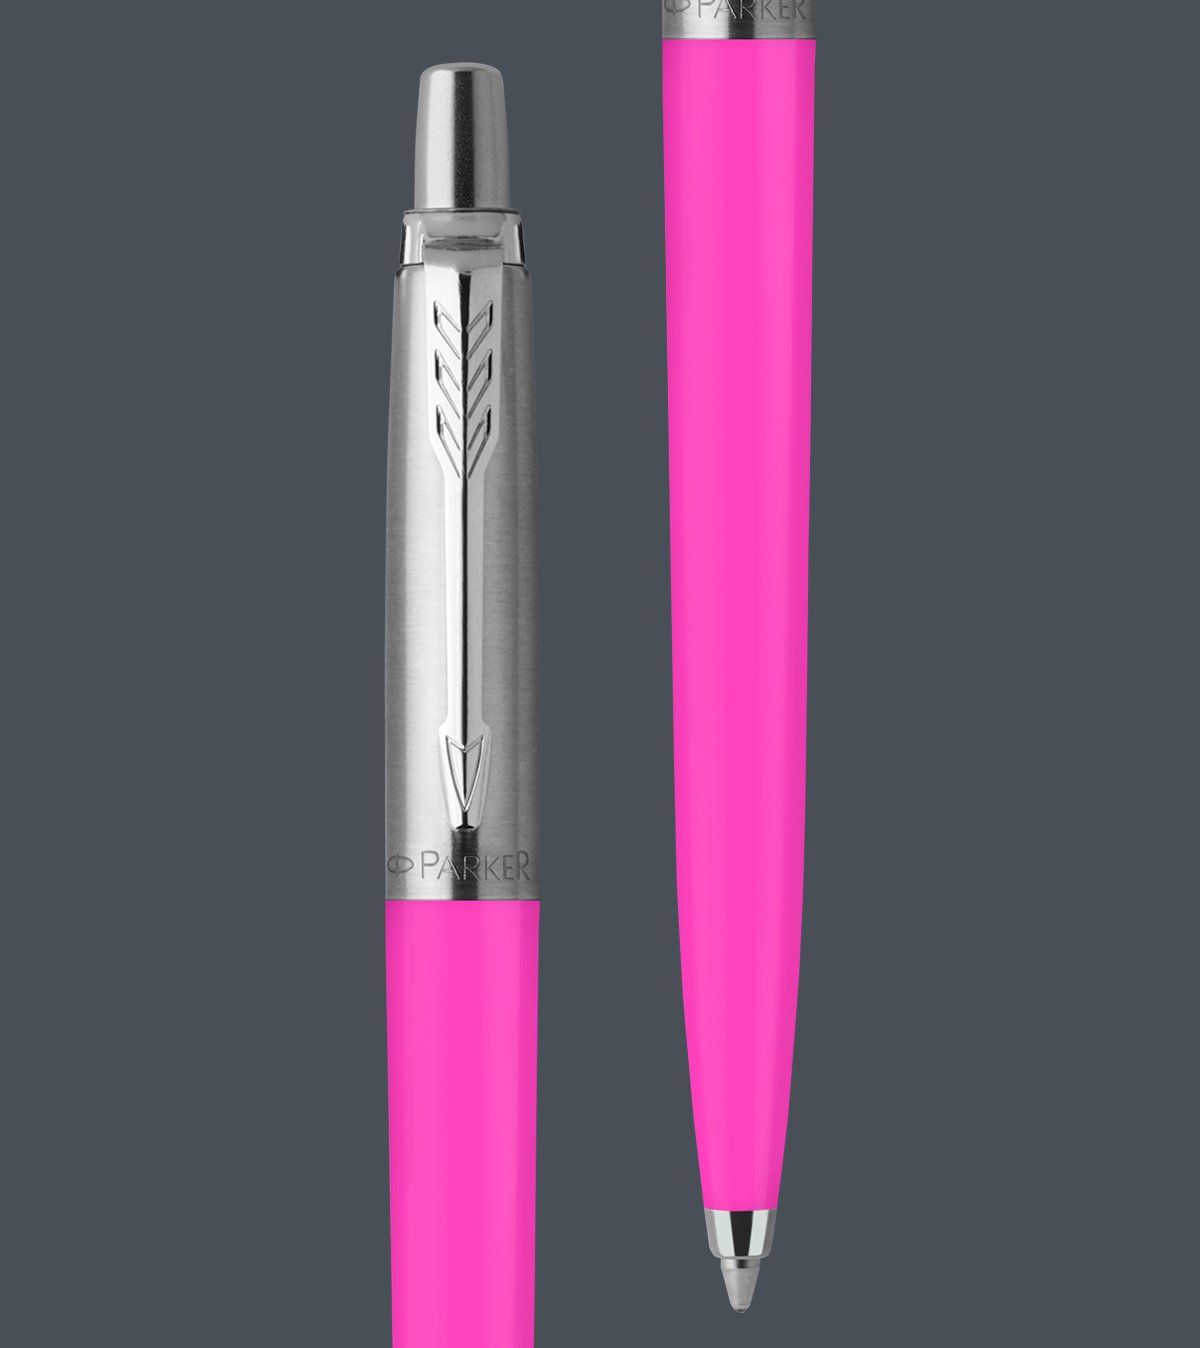 Parker Jotter Original Pink Glossy Barrel Ballpoint Pen Medium Nib Blue Ink